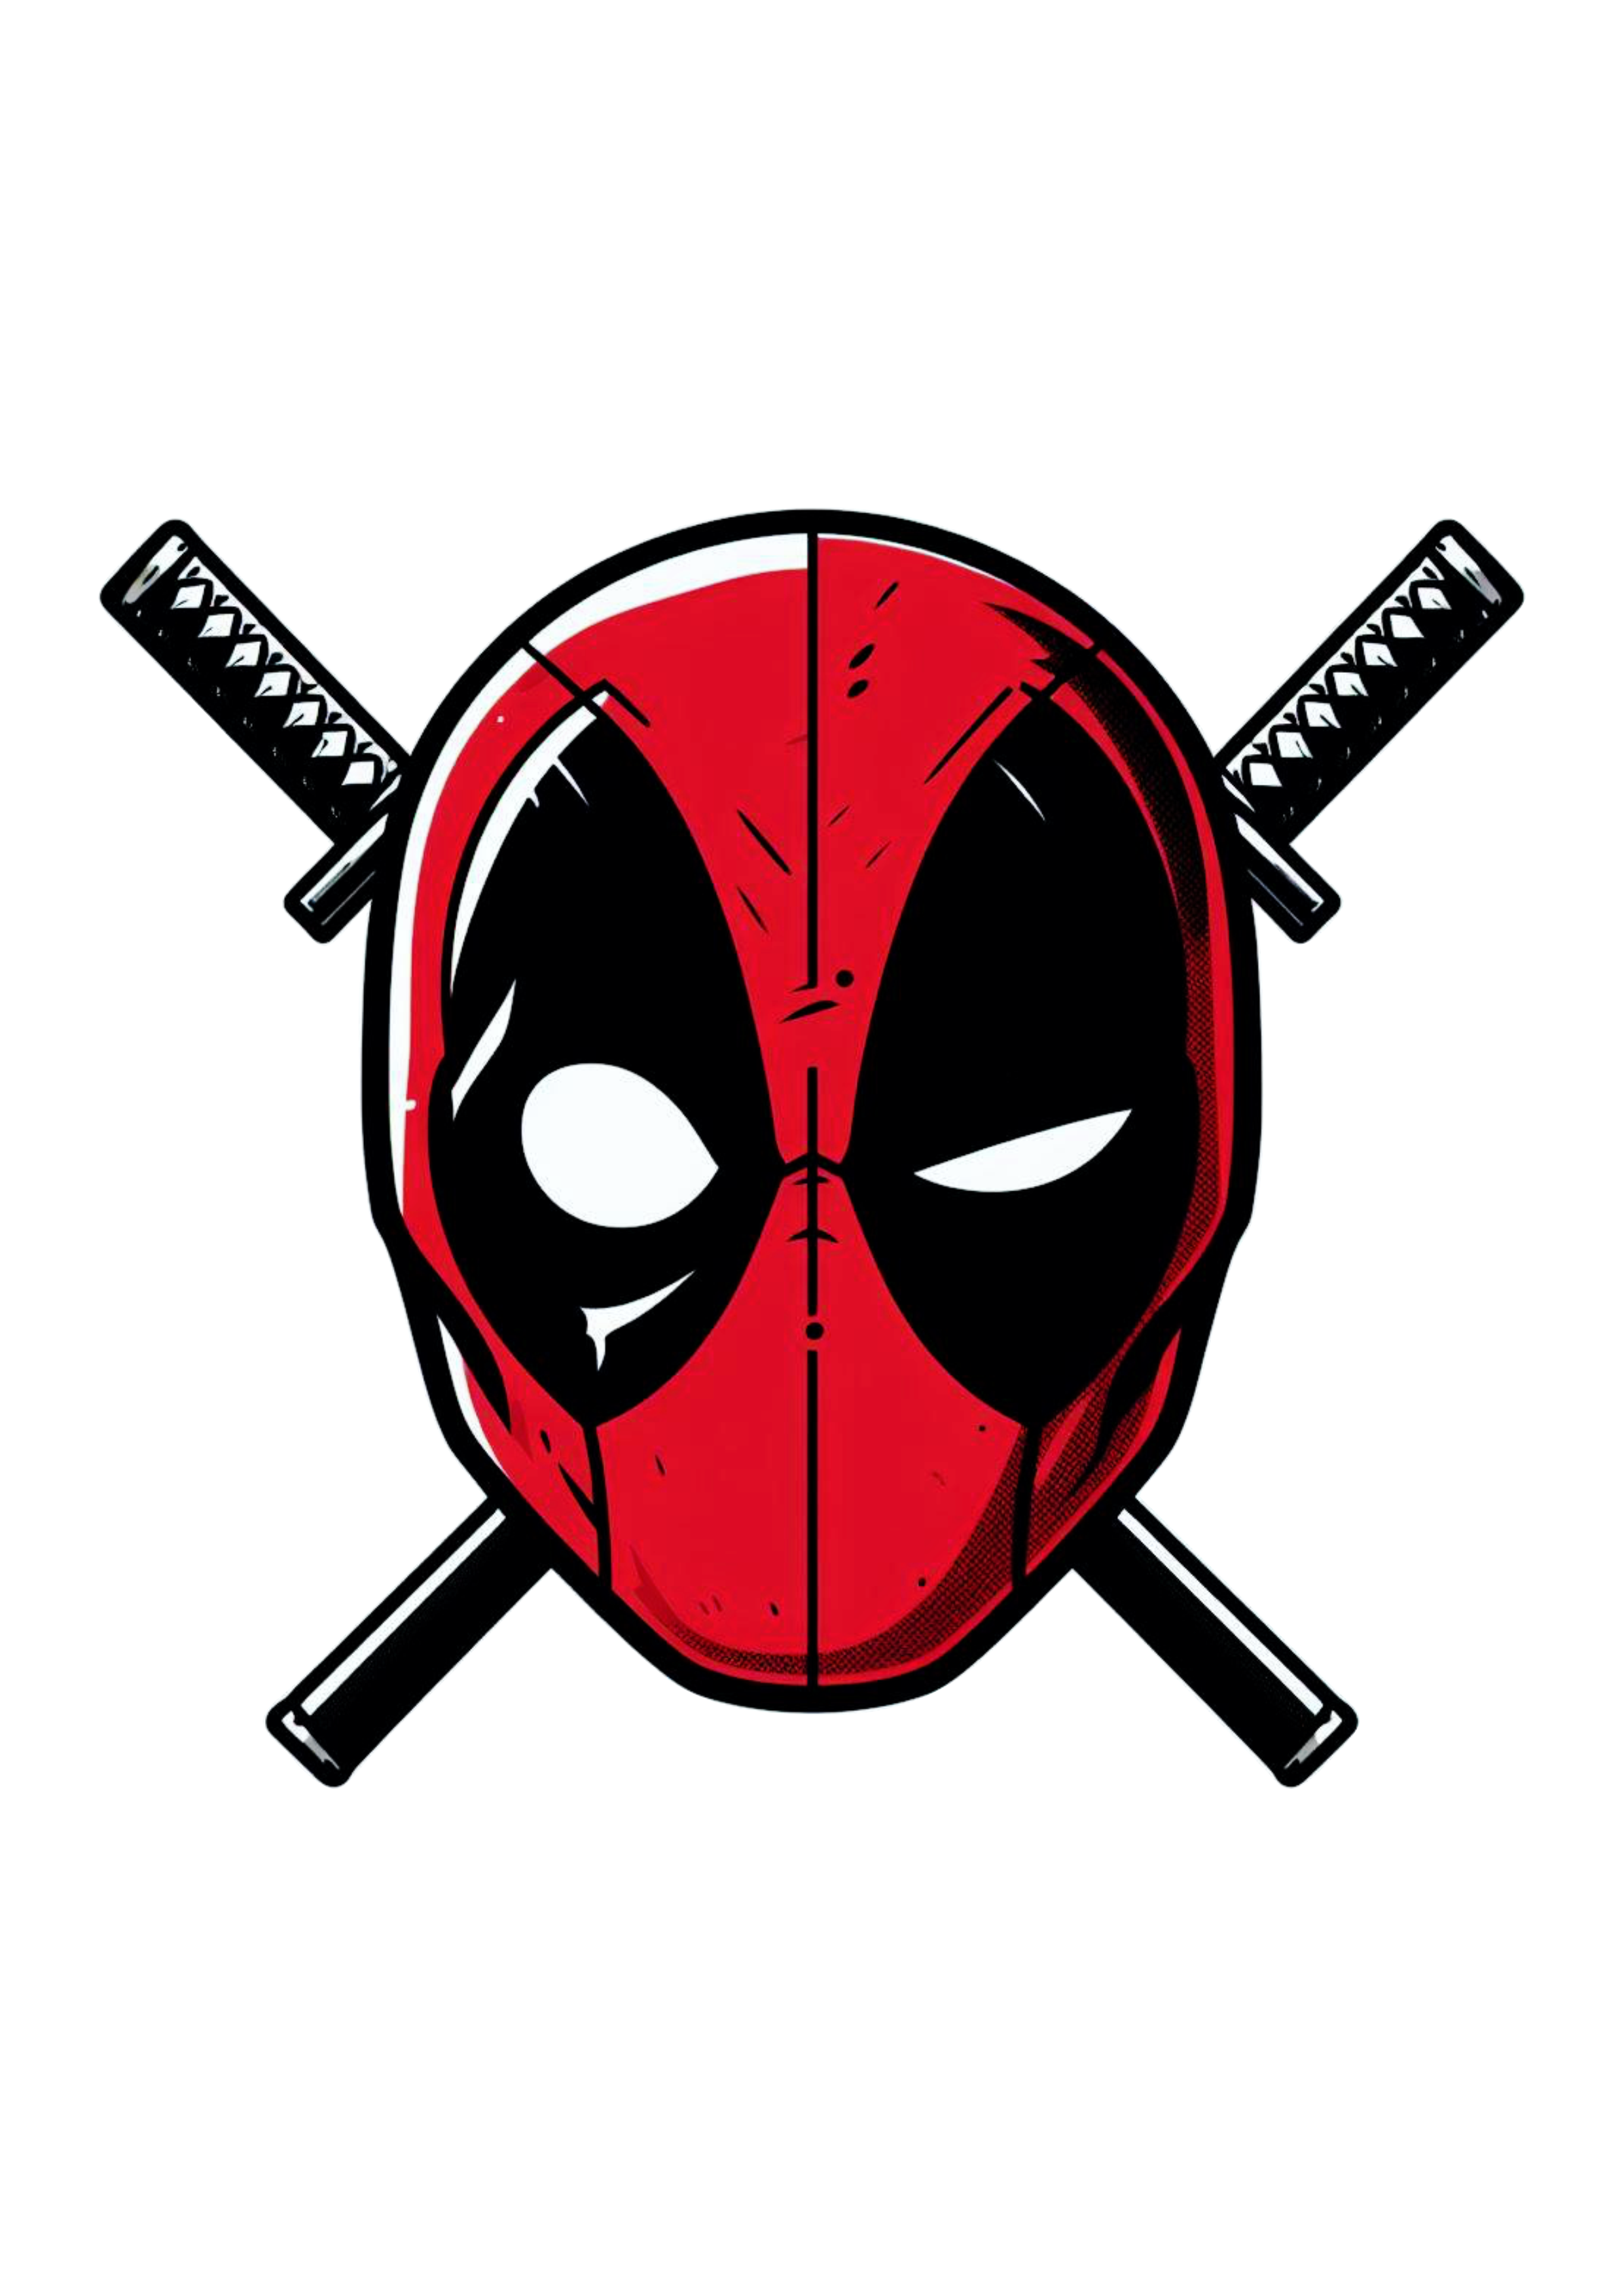 Deadpool herói Marvel desenho simples cartoon colorido cabeça logo png